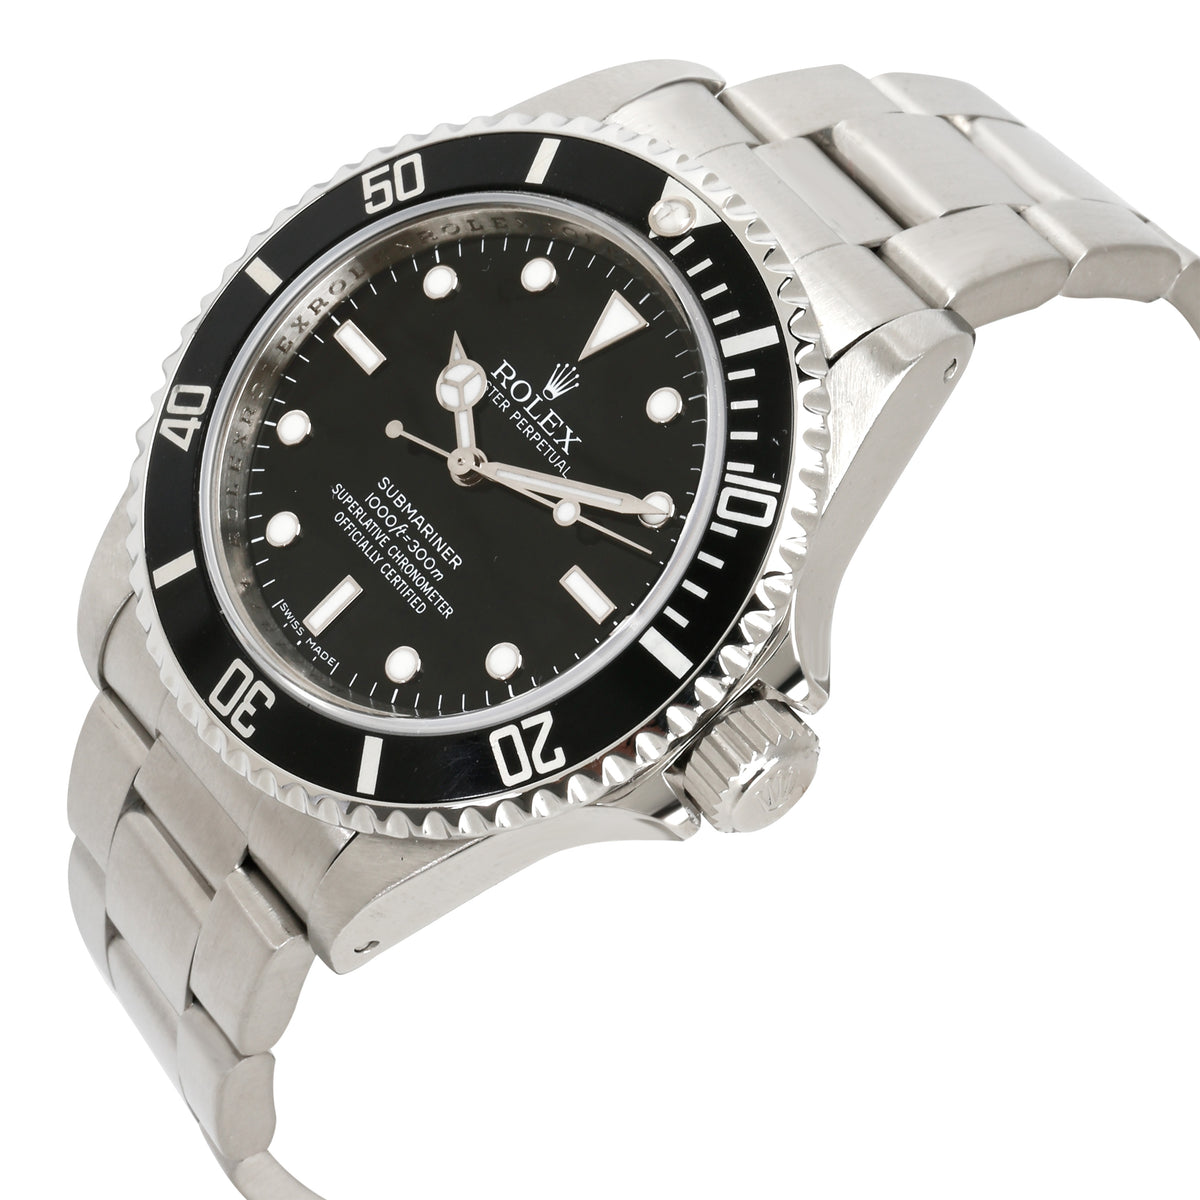 Rolex Submariner 14060M Men's Watch in  Stainless Steel